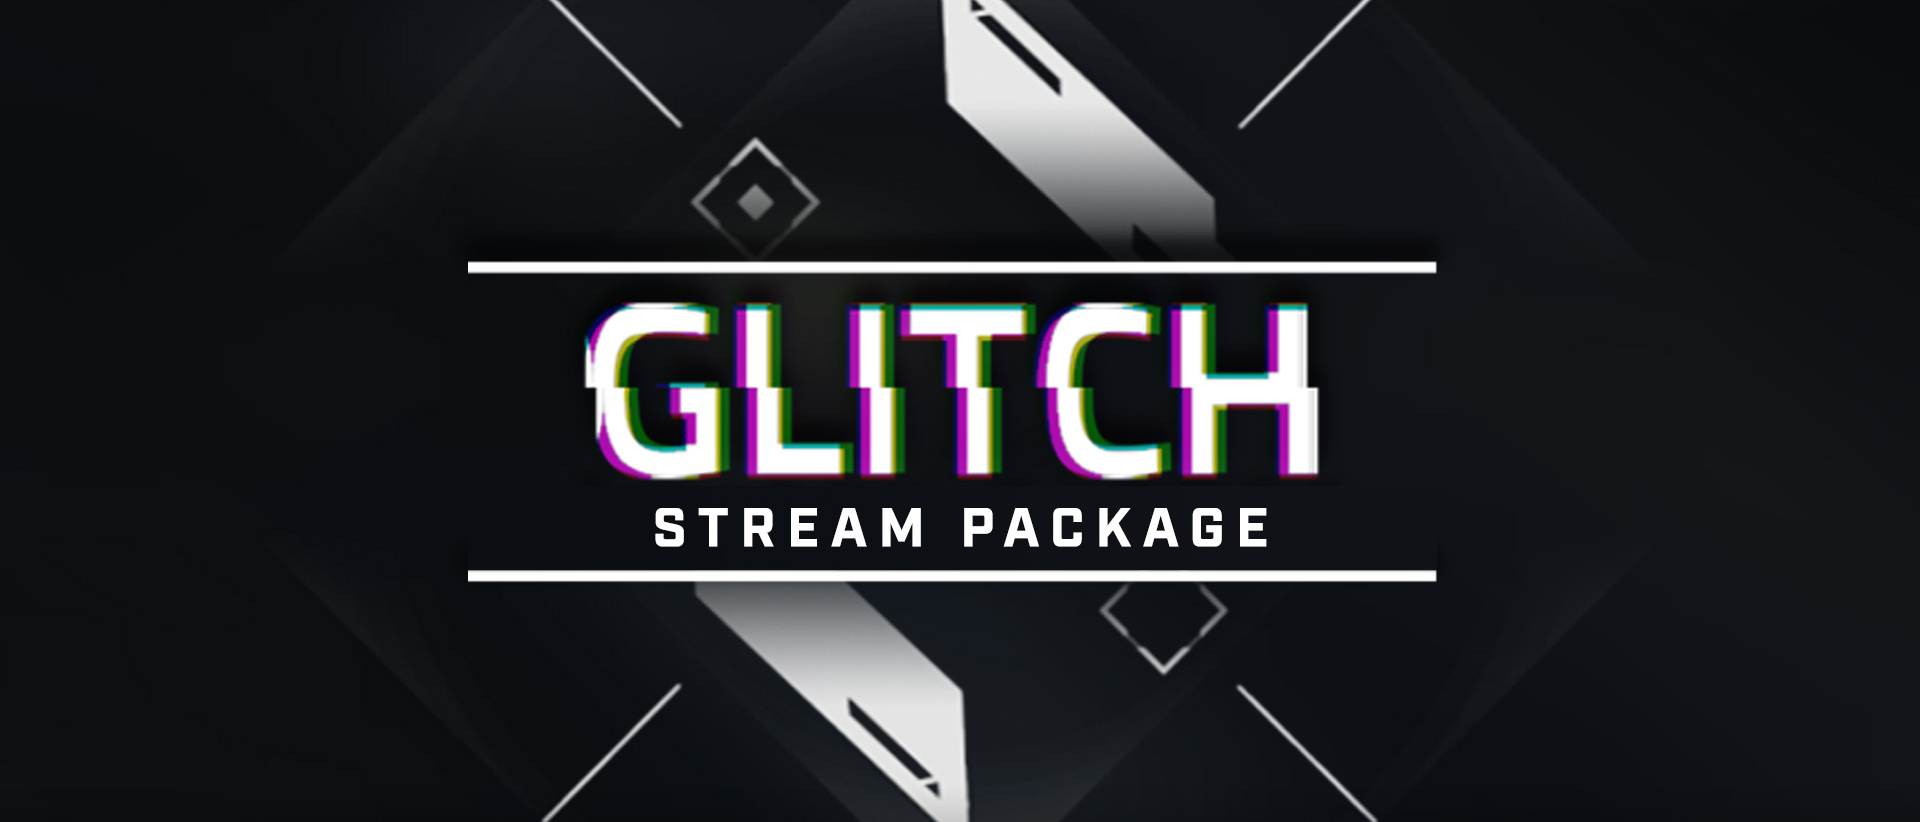 Glitch Stream Package